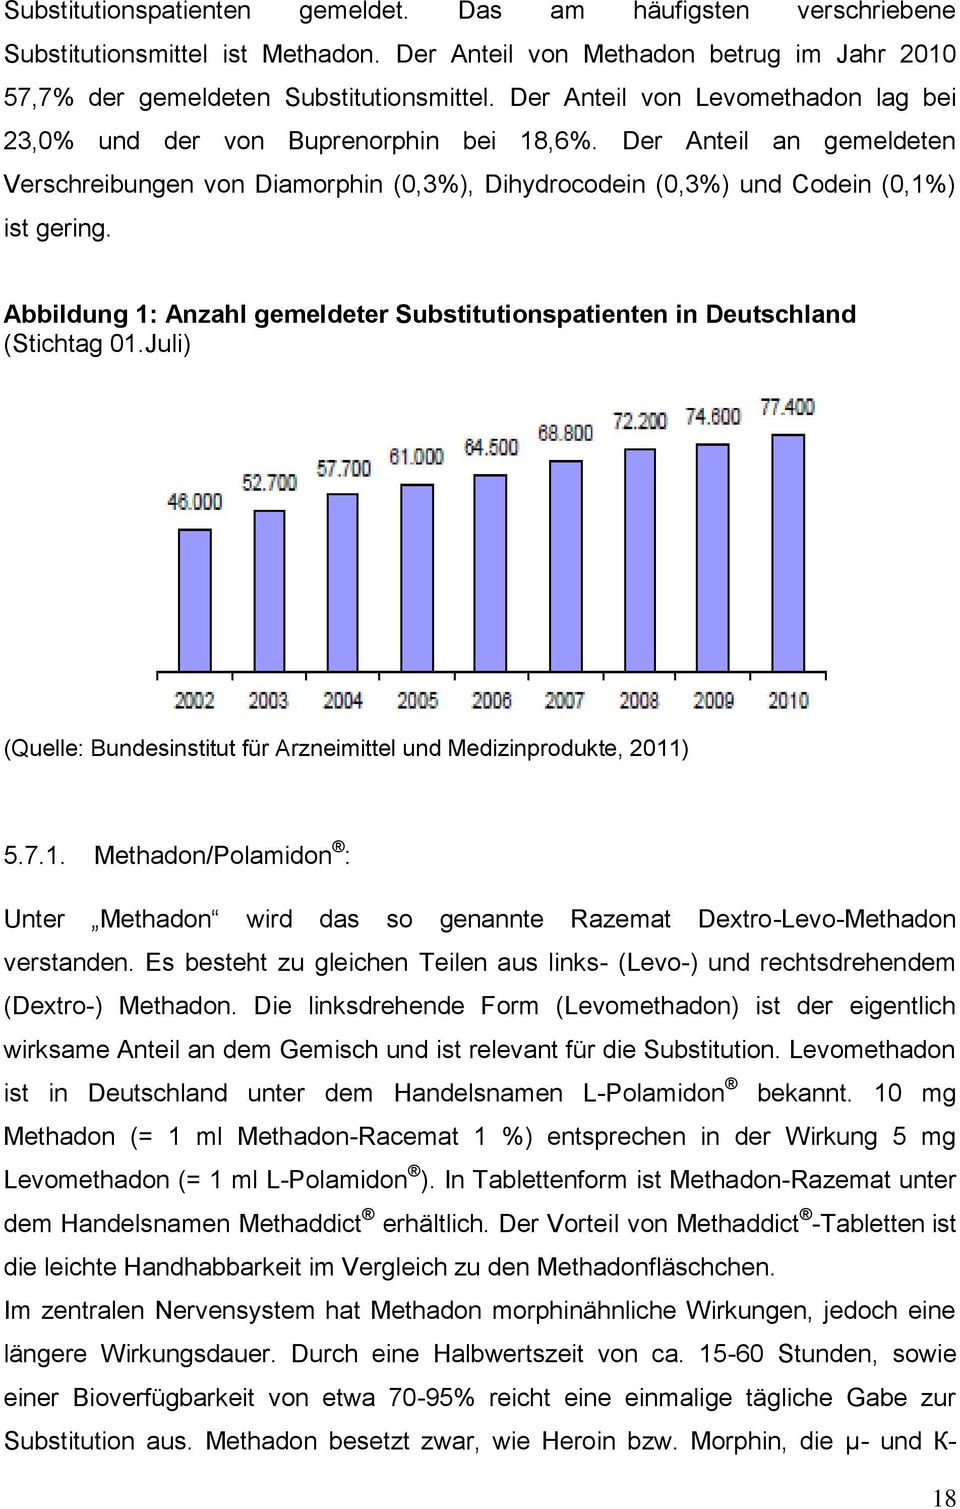 Abbildung 1: Anzahl gemeldeter Substitutionspatienten in Deutschland (Stichtag 01.Juli) (Quelle: Bundesinstitut für Arzneimittel und Medizinprodukte, 2011) 5.7.1. Methadon/Polamidon : Unter Methadon wird das so genannte Razemat Dextro-Levo-Methadon verstanden.